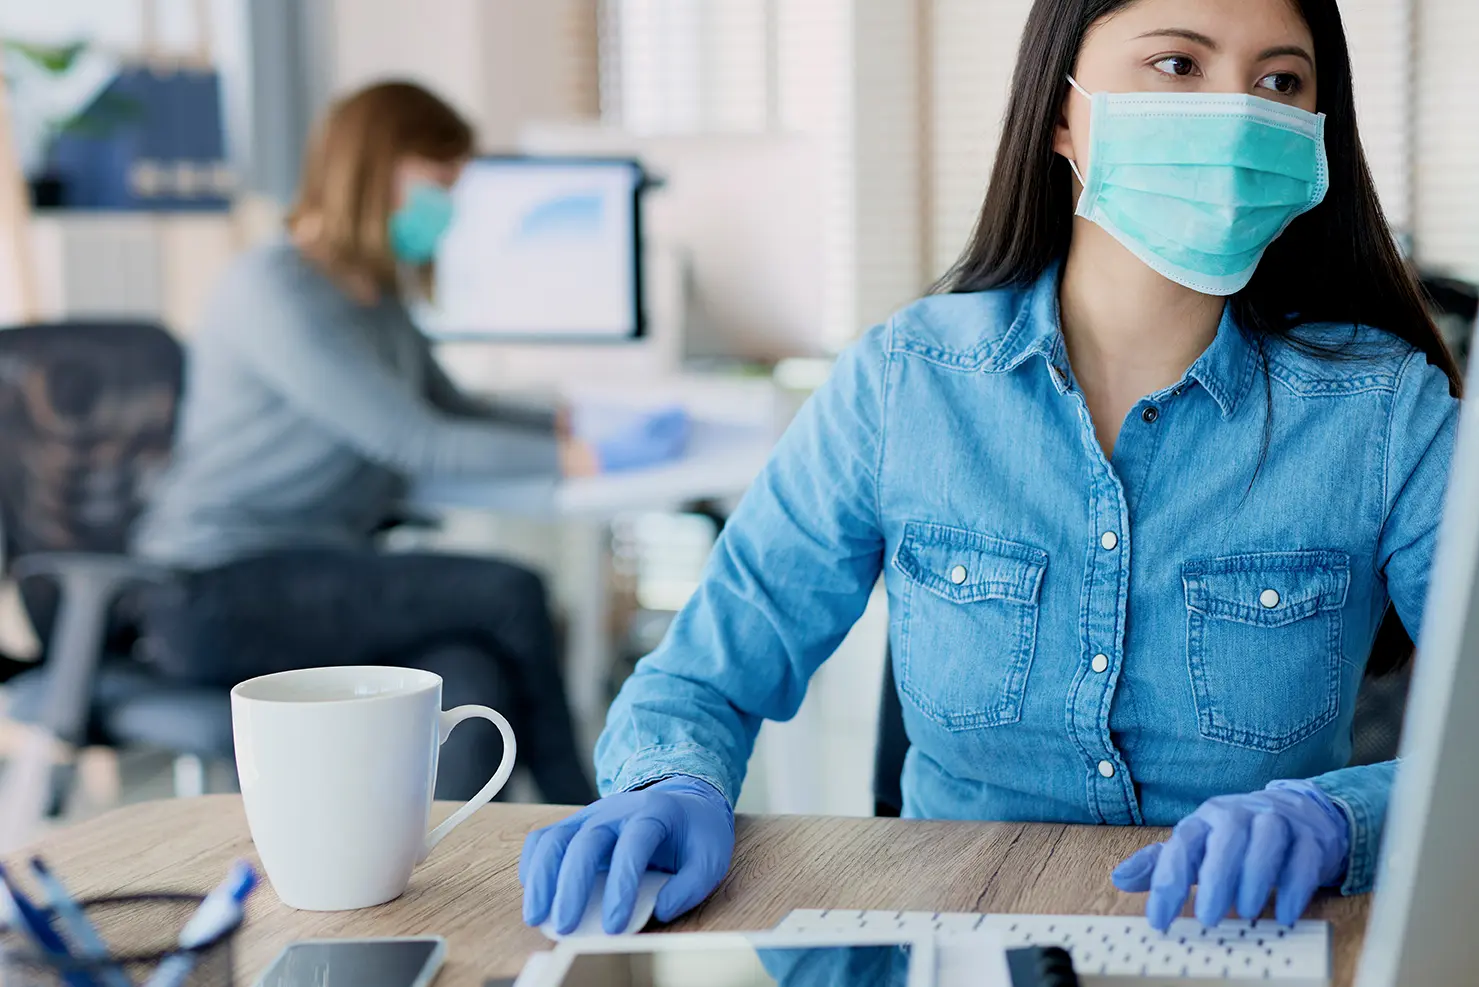 Dos mujeres en oficina frente a escritorio con cubrebocas y guantes de látex, una en primer plano y otra de fondo en segundo plano, mostrando cómo minimiza el riesgo de contagio de COVID-19 en la oficina